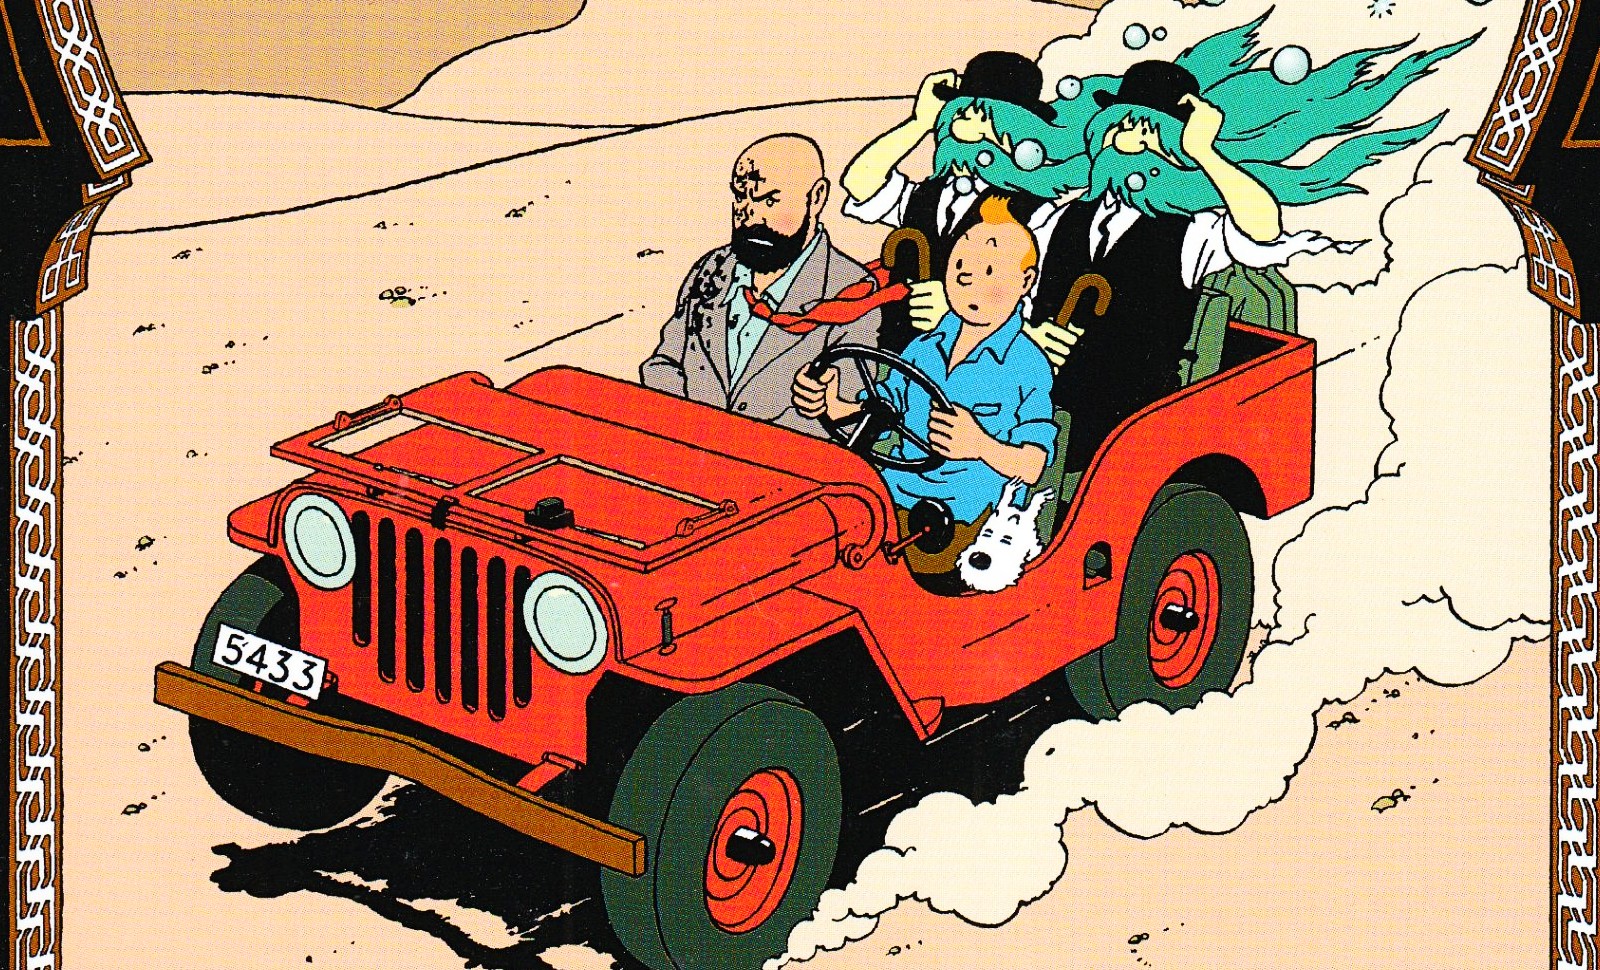 L'essentiel à propos de Tintin et Hergé